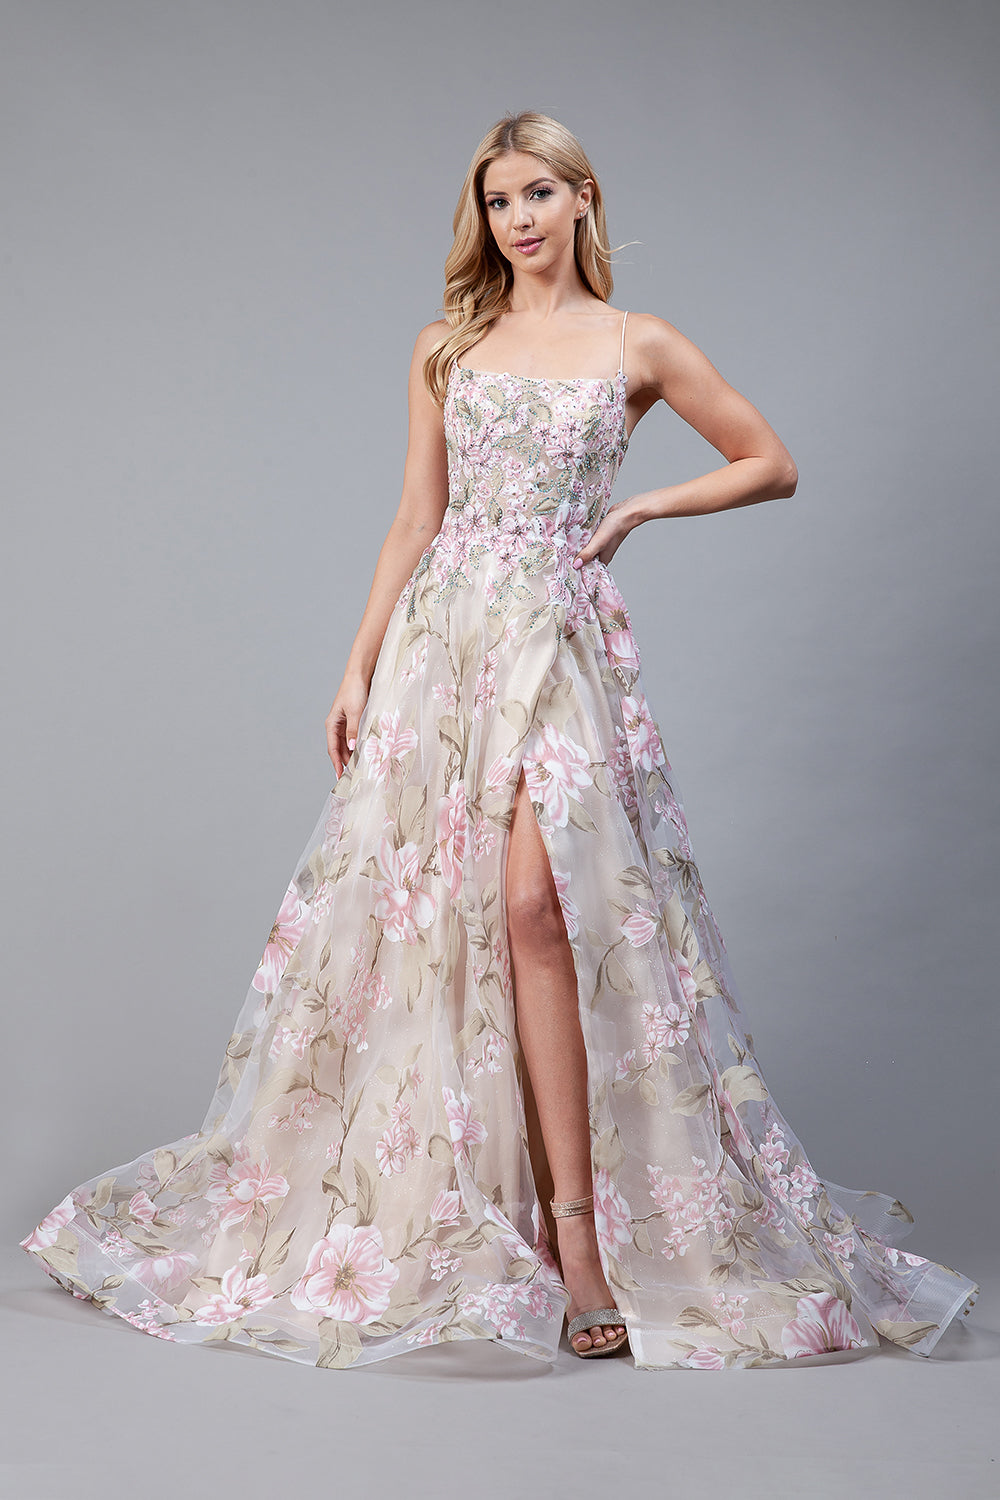 2105 -Embellished Floral Printed Maxi Dress with Slit